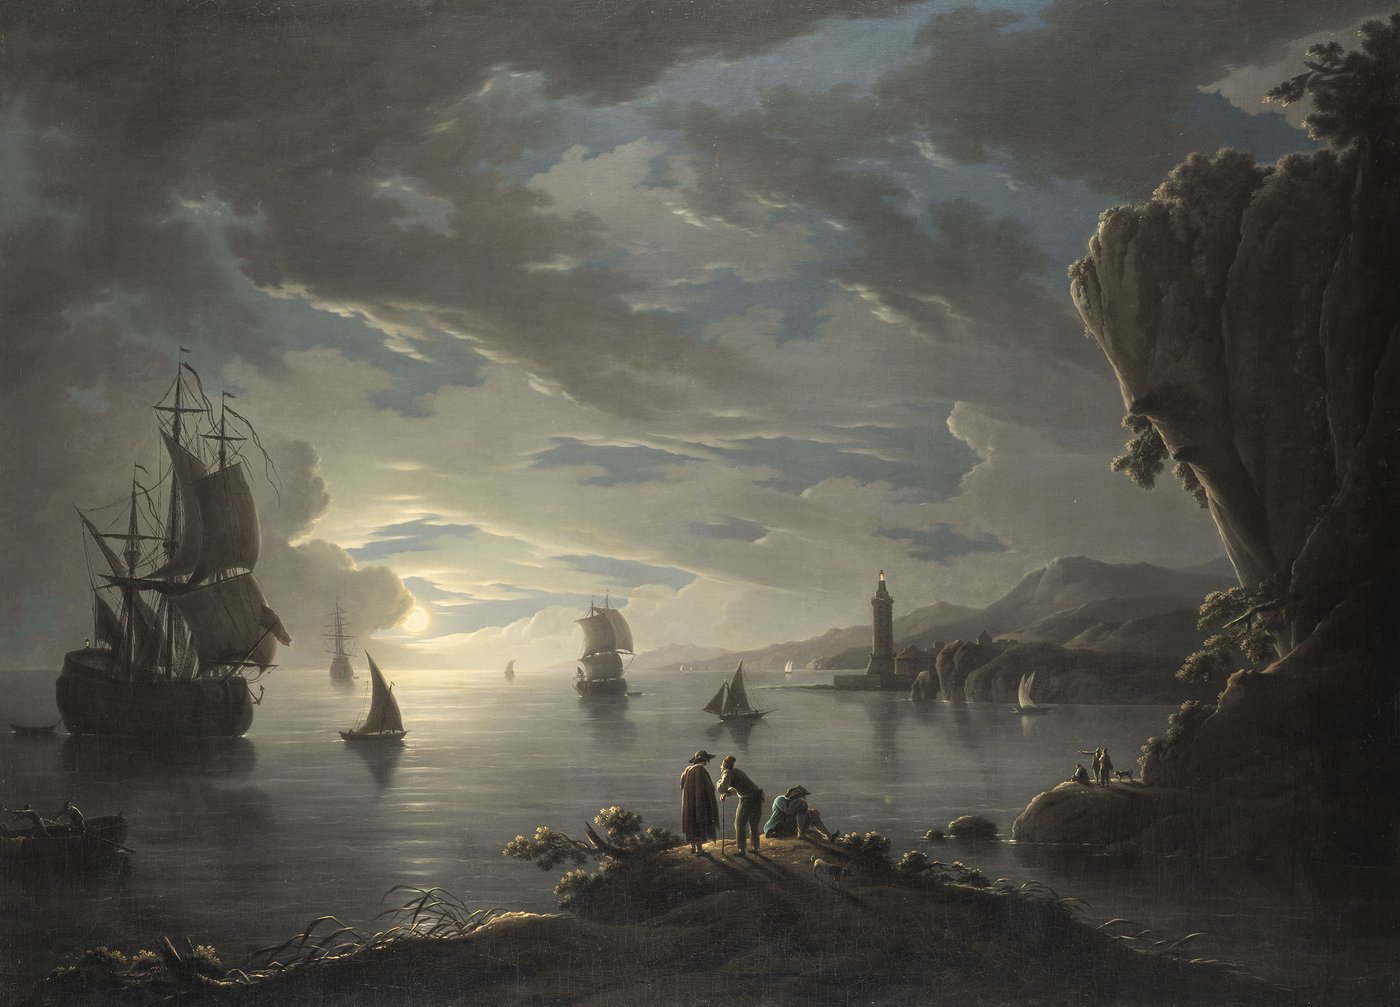 einige Menschen betrachten das stille Meer bei Nacht mit vielen Segelschiffen, im Hintergrund kommt der strahlende Vollmond hinter Wolken hervor.